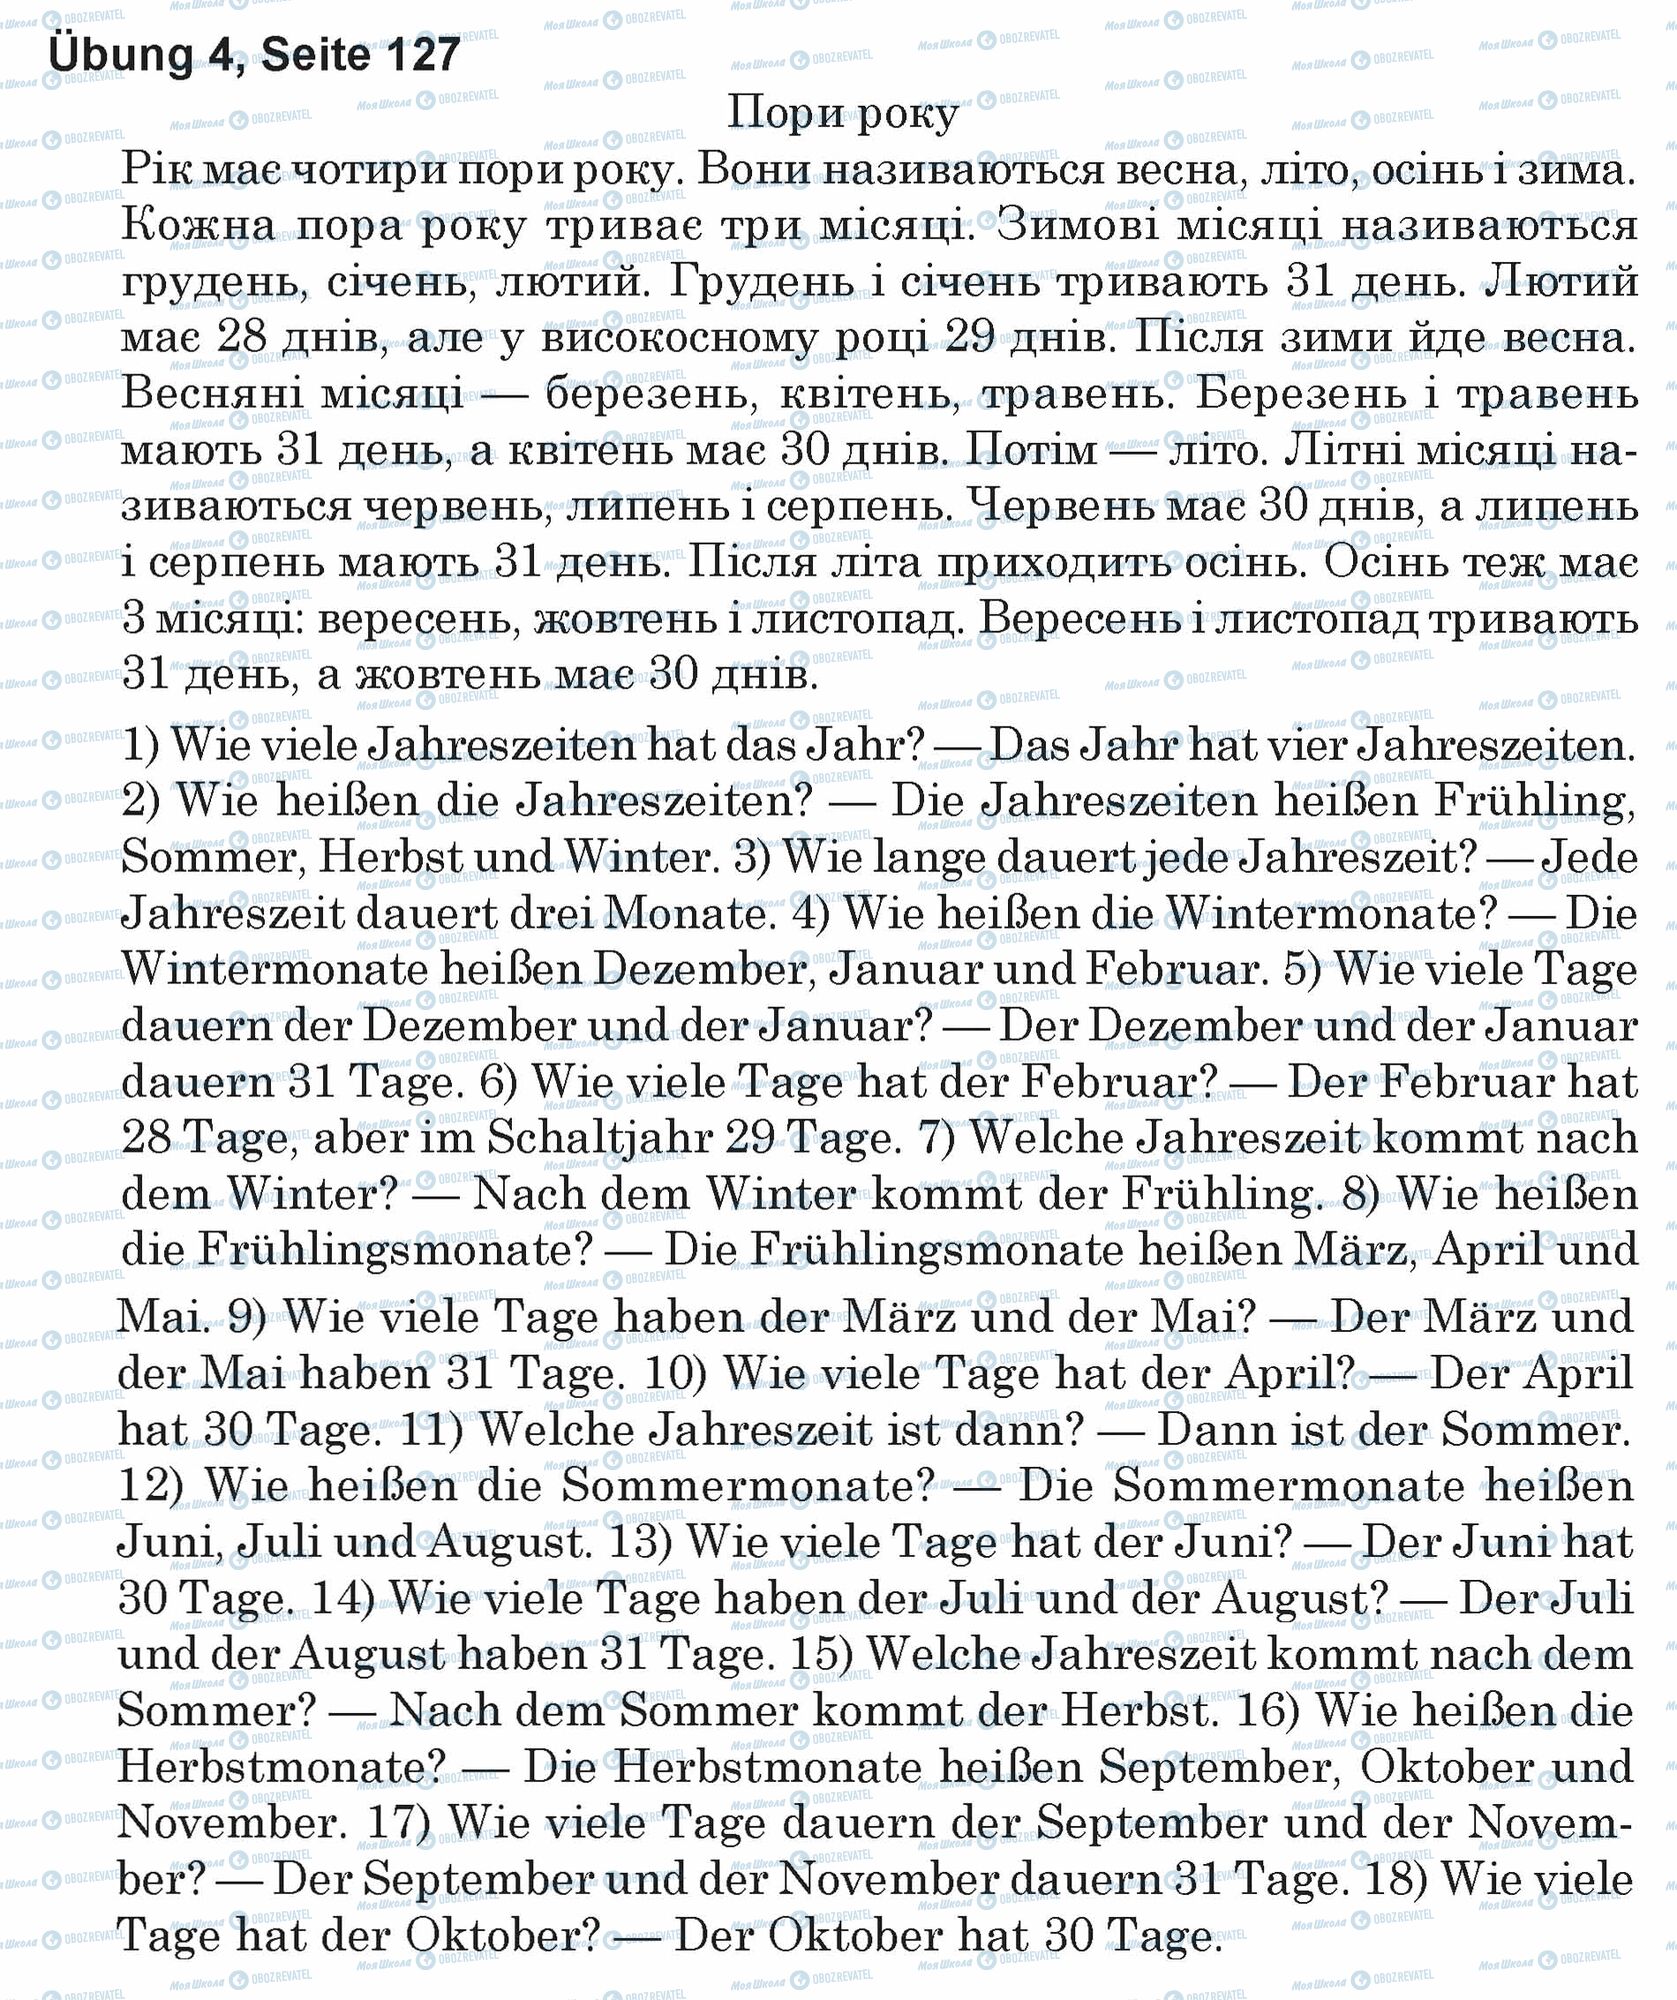 ГДЗ Німецька мова 5 клас сторінка Ubung 4, Seite 127